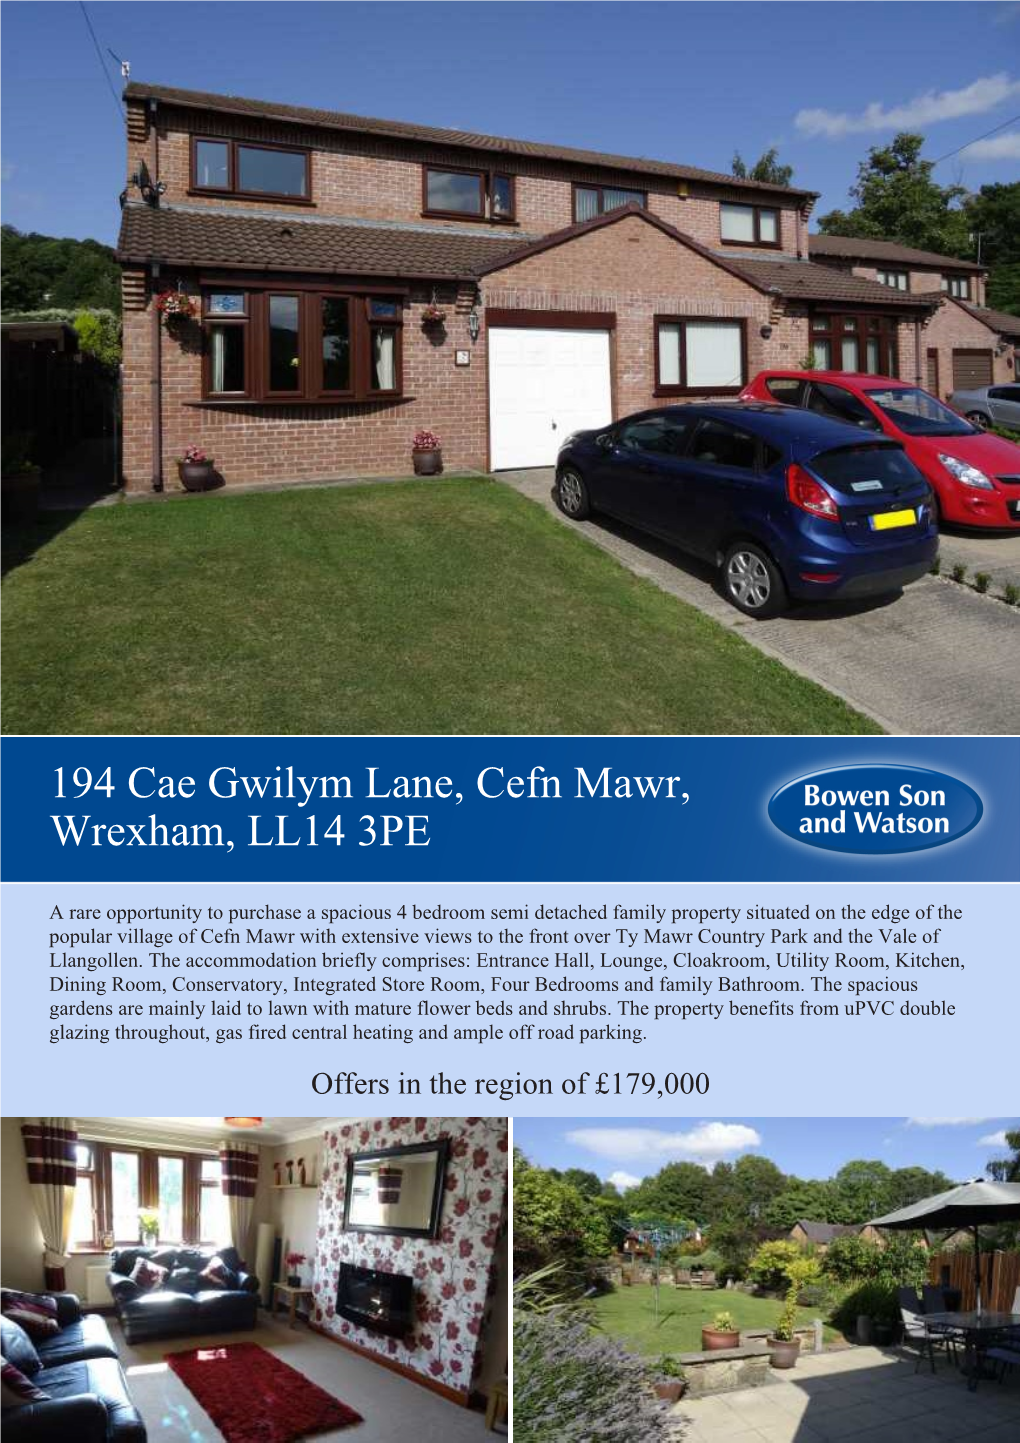 194 Cae Gwilym Lane, Cefn Mawr, Wrexham, LL14 3PE